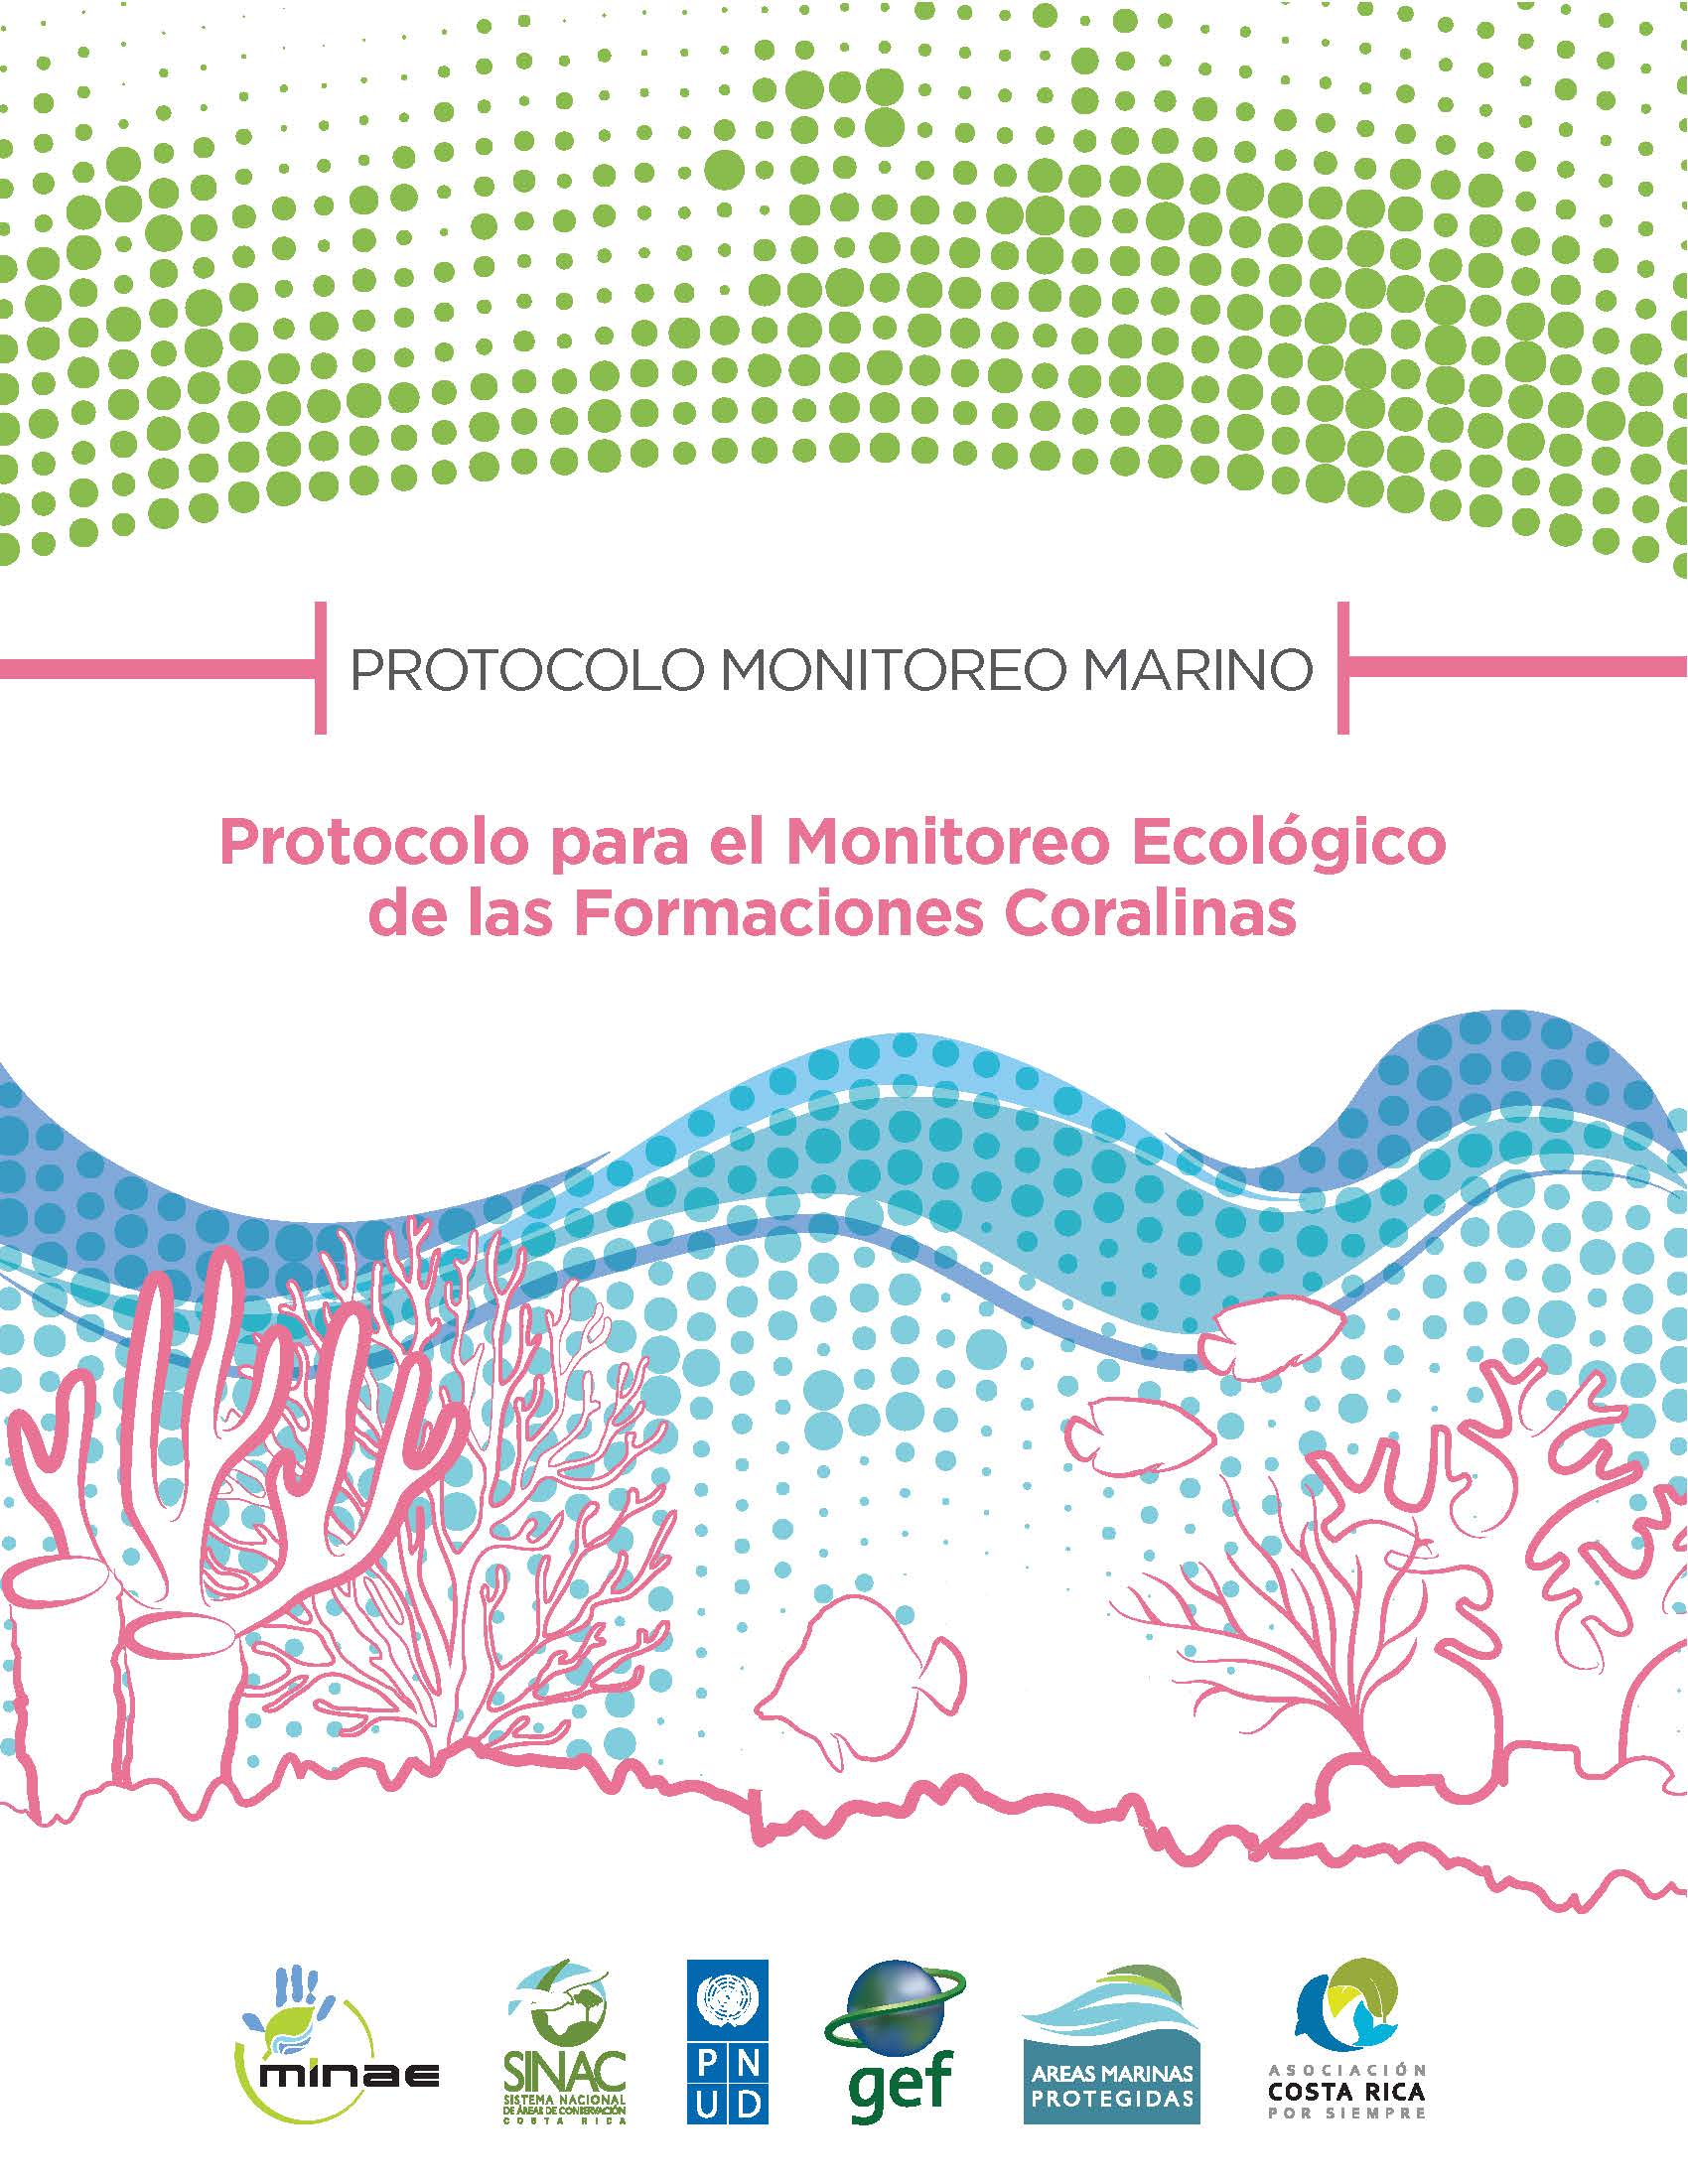 Protocolo PRONAMEC formación coralina